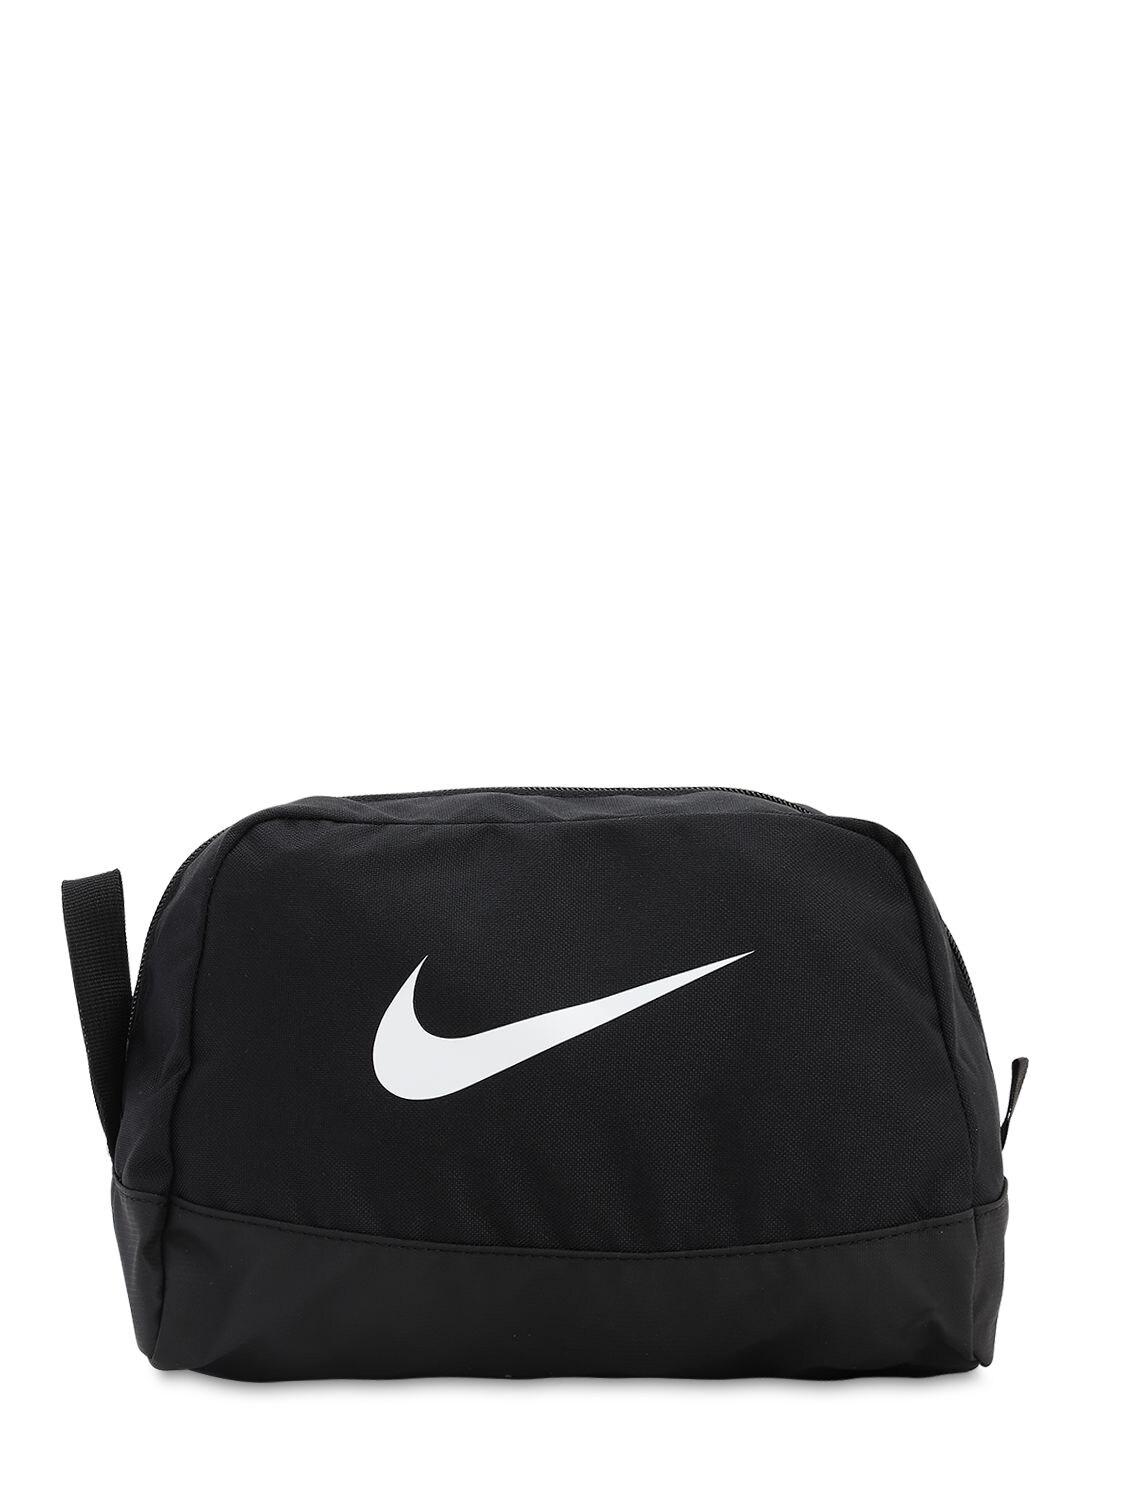 Nike Club Team Toiletry Bag in Black for Men - Lyst